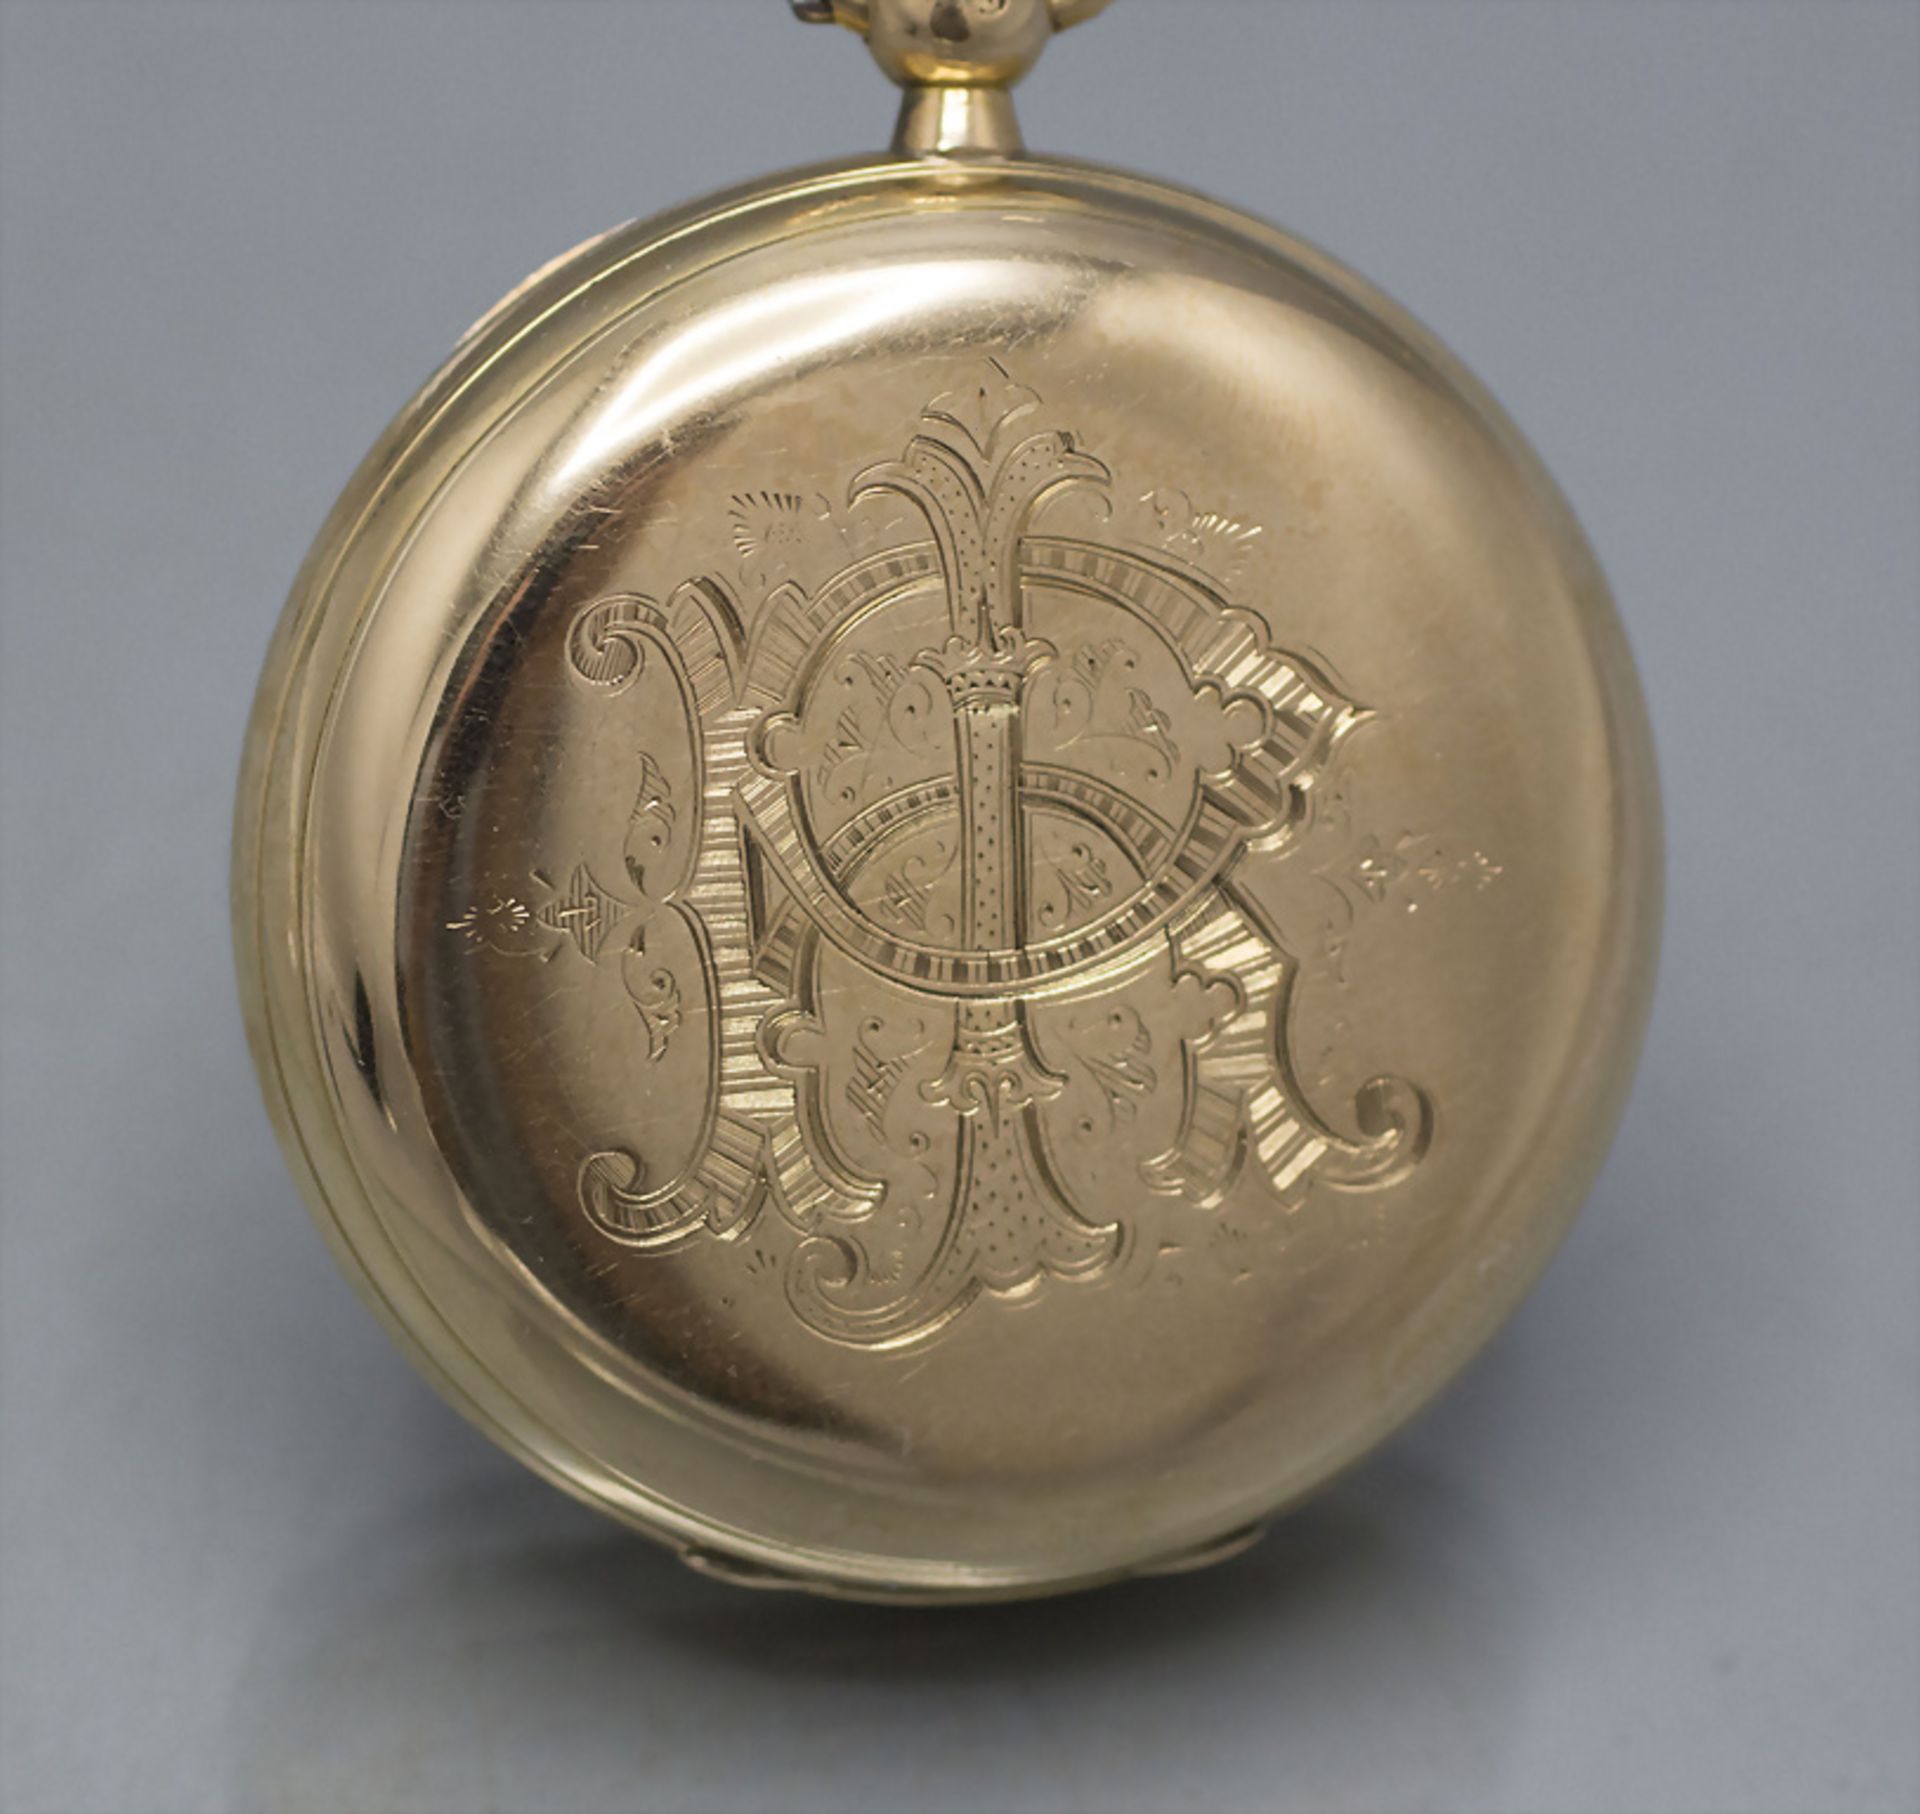 Offene Taschenuhr / An 18 ct gold pocket watch, England, um 1800 - Image 7 of 7